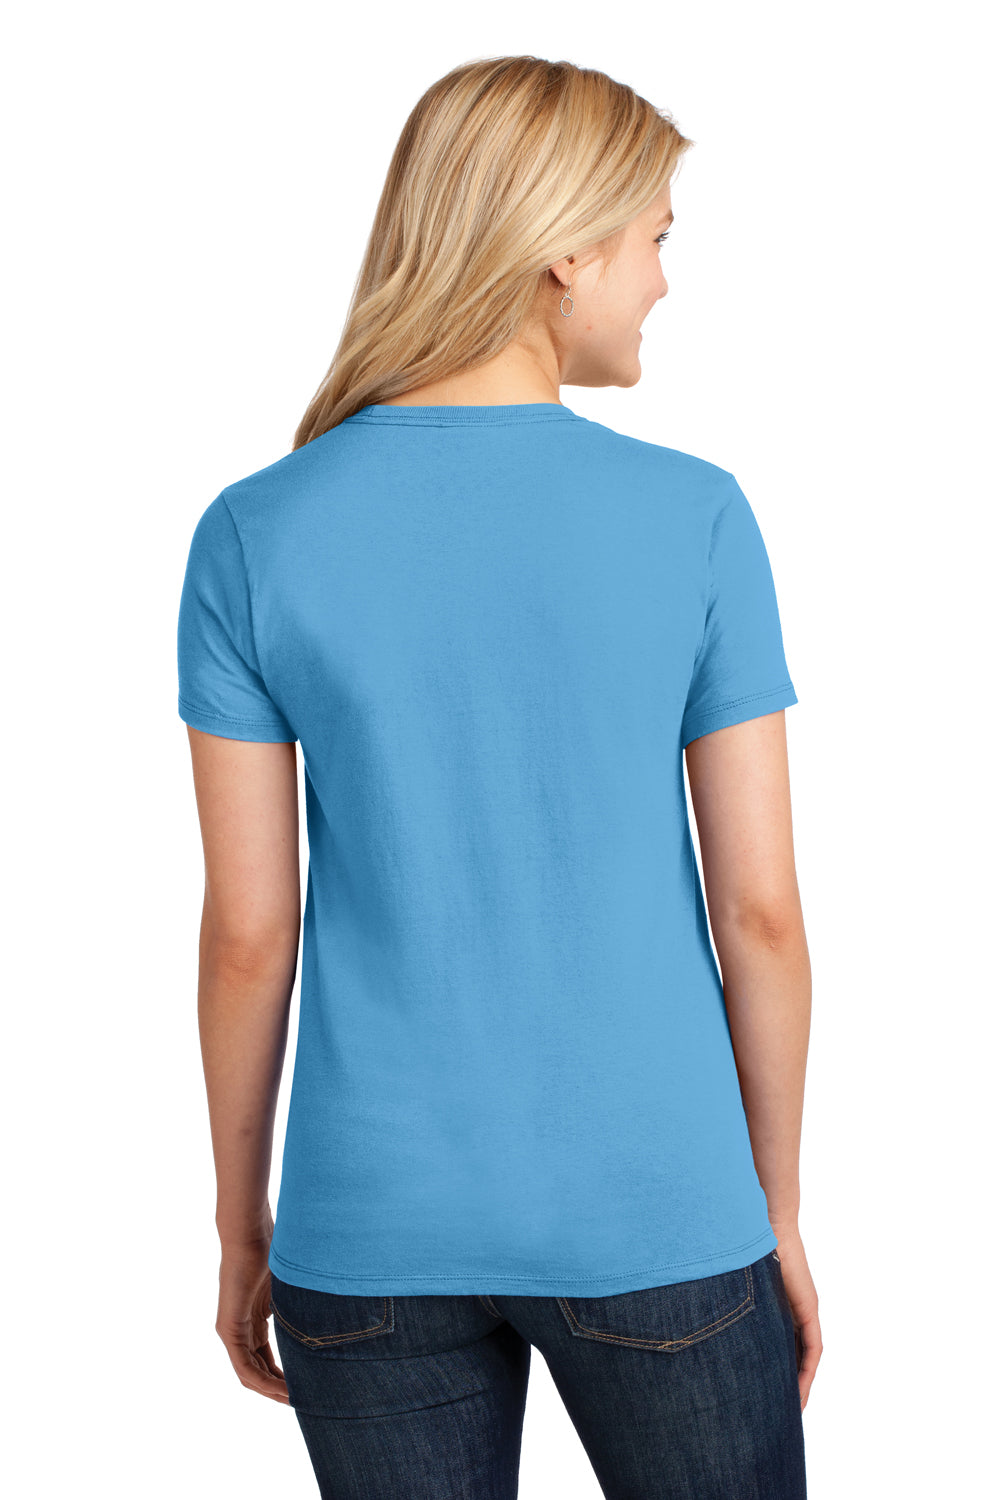 Port & Company LPC54 Womens Core Short Sleeve Crewneck T-Shirt Aqua Blue Back